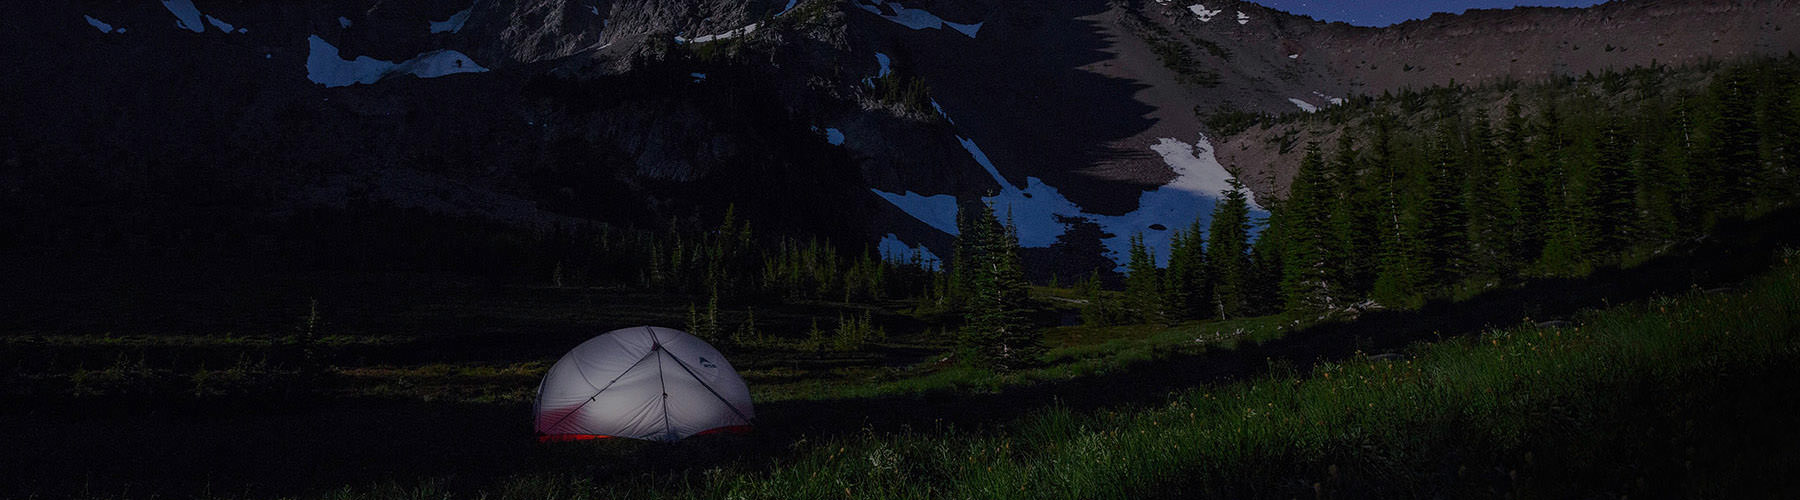 Tente de camping installée sur les hauteurs d'une montagne enneigée la nuit, avec étoiles scintillantes dans le ciel.